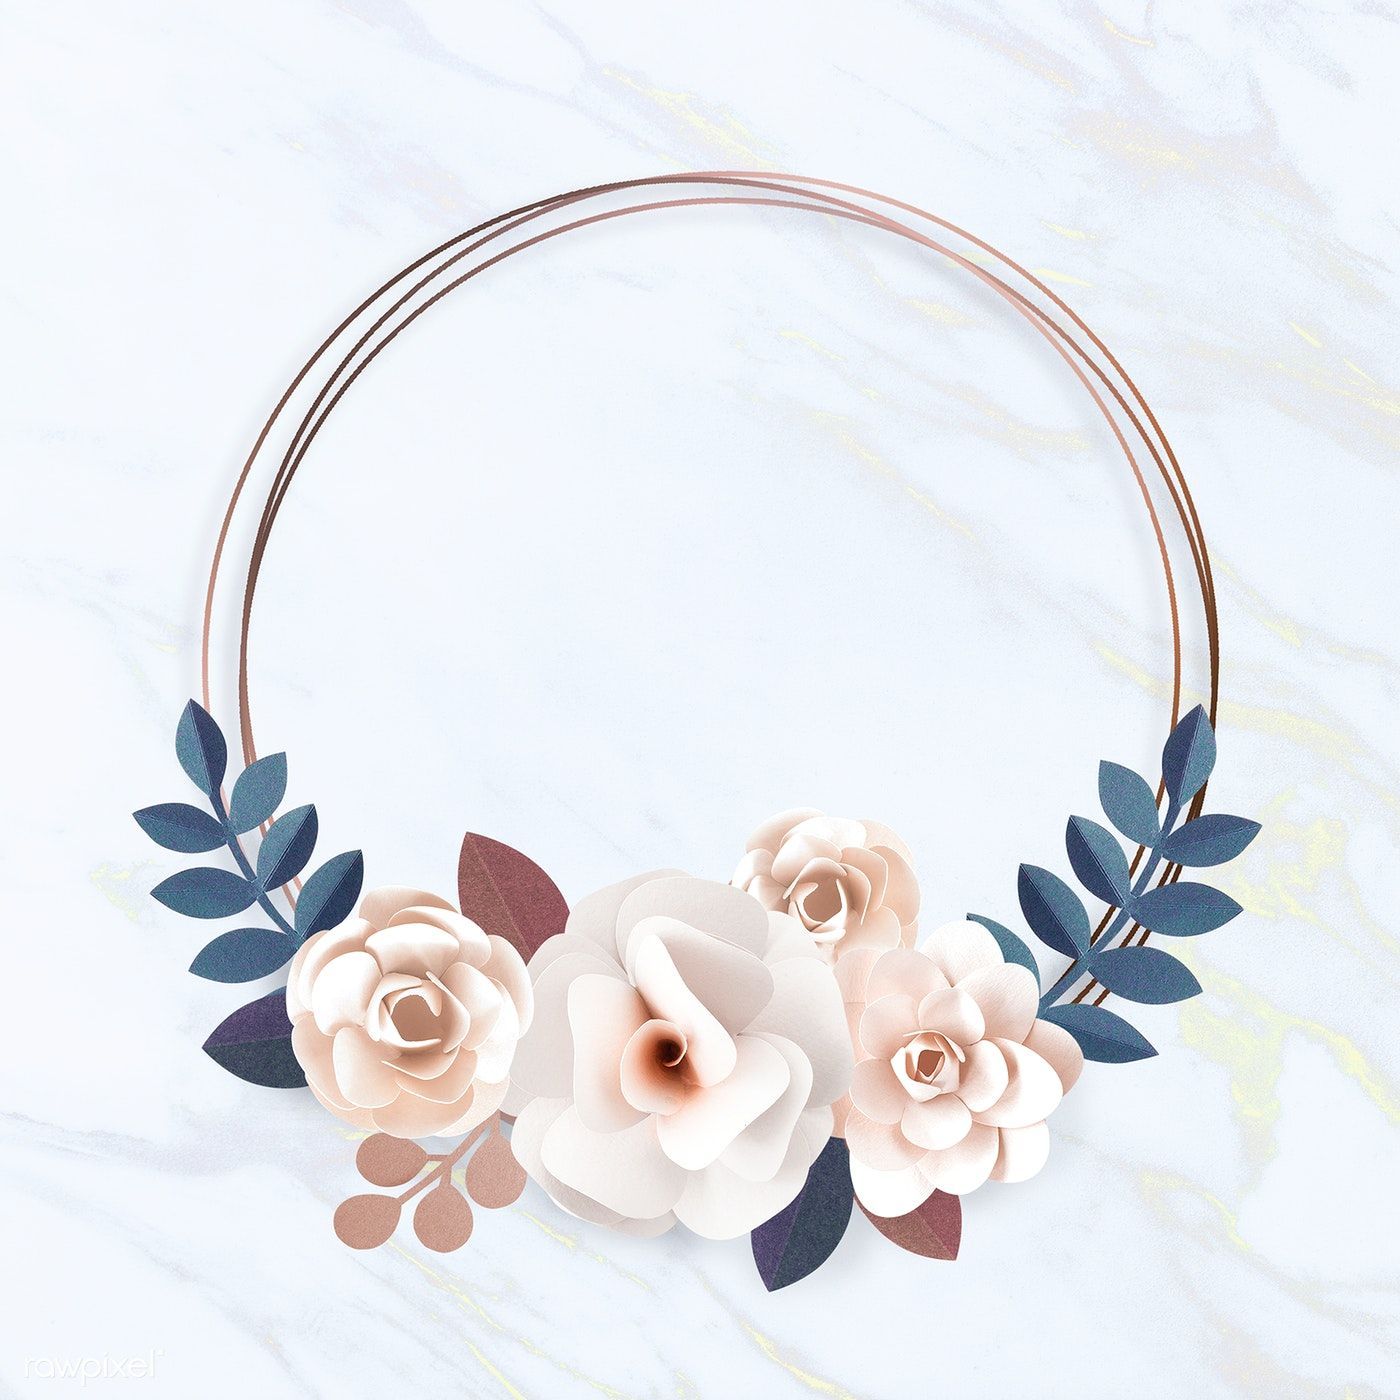 Download premium illustration of Round paper craft flower wreath